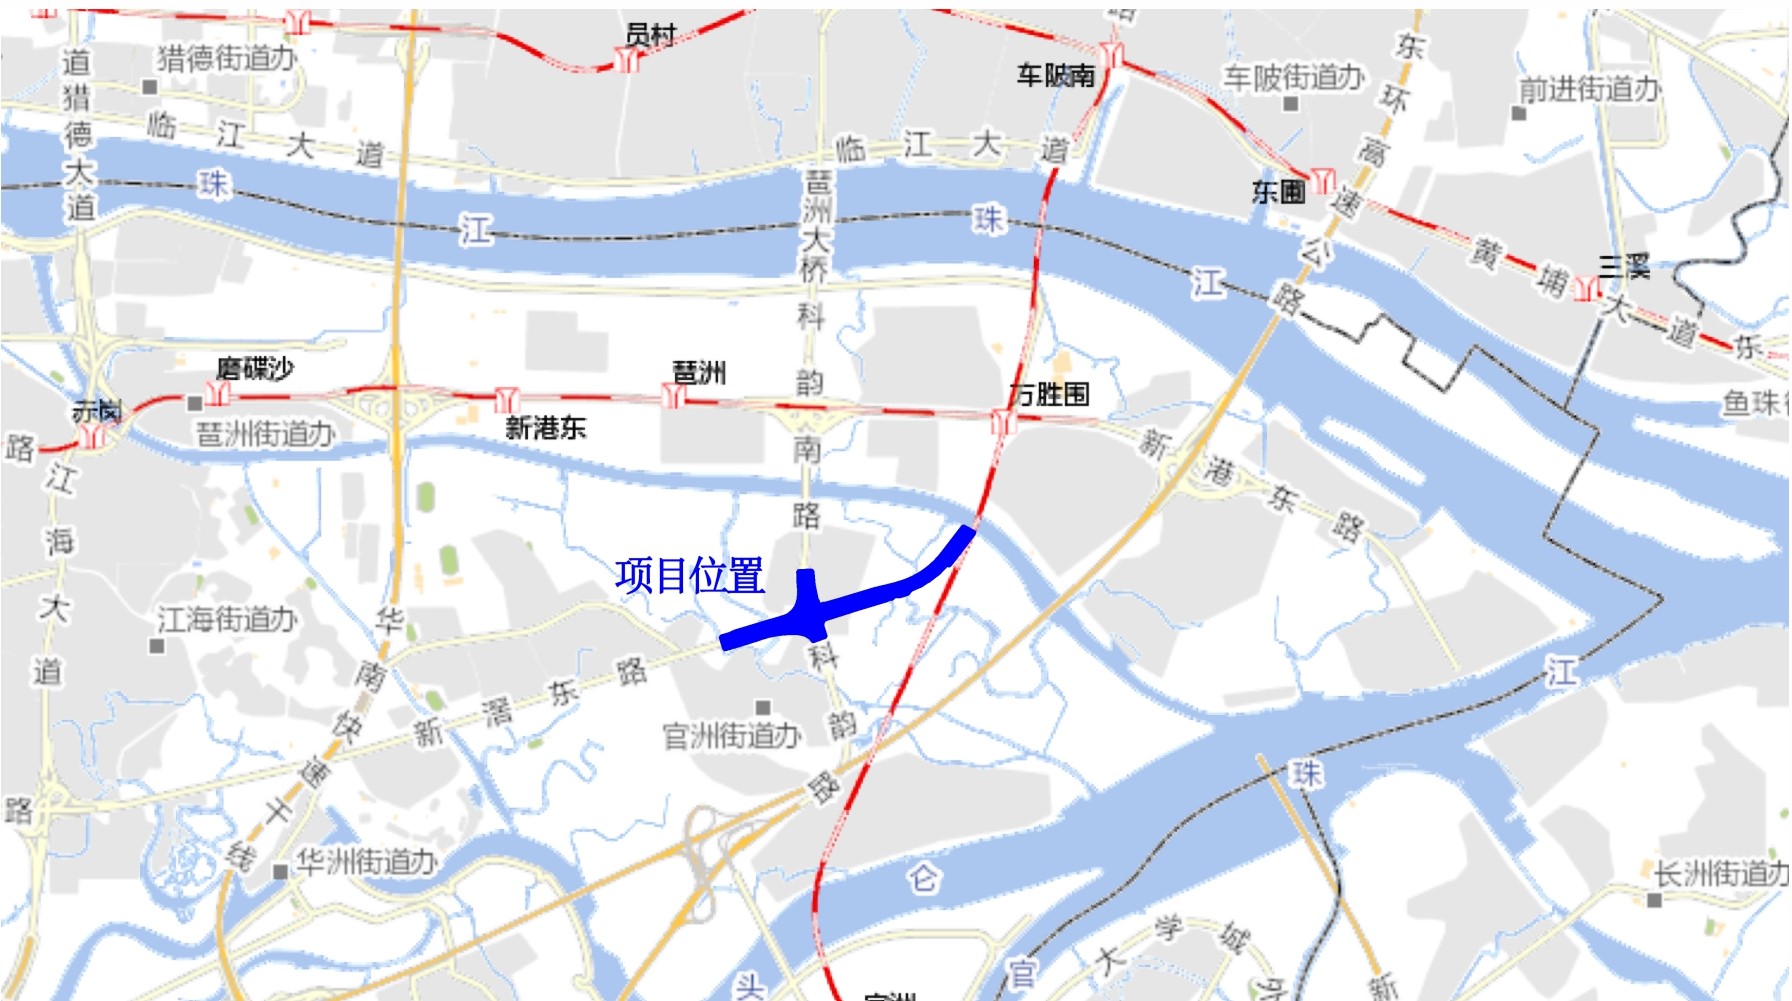 车陂路新滘东路隧道二期规划公示广州再添一过江隧道